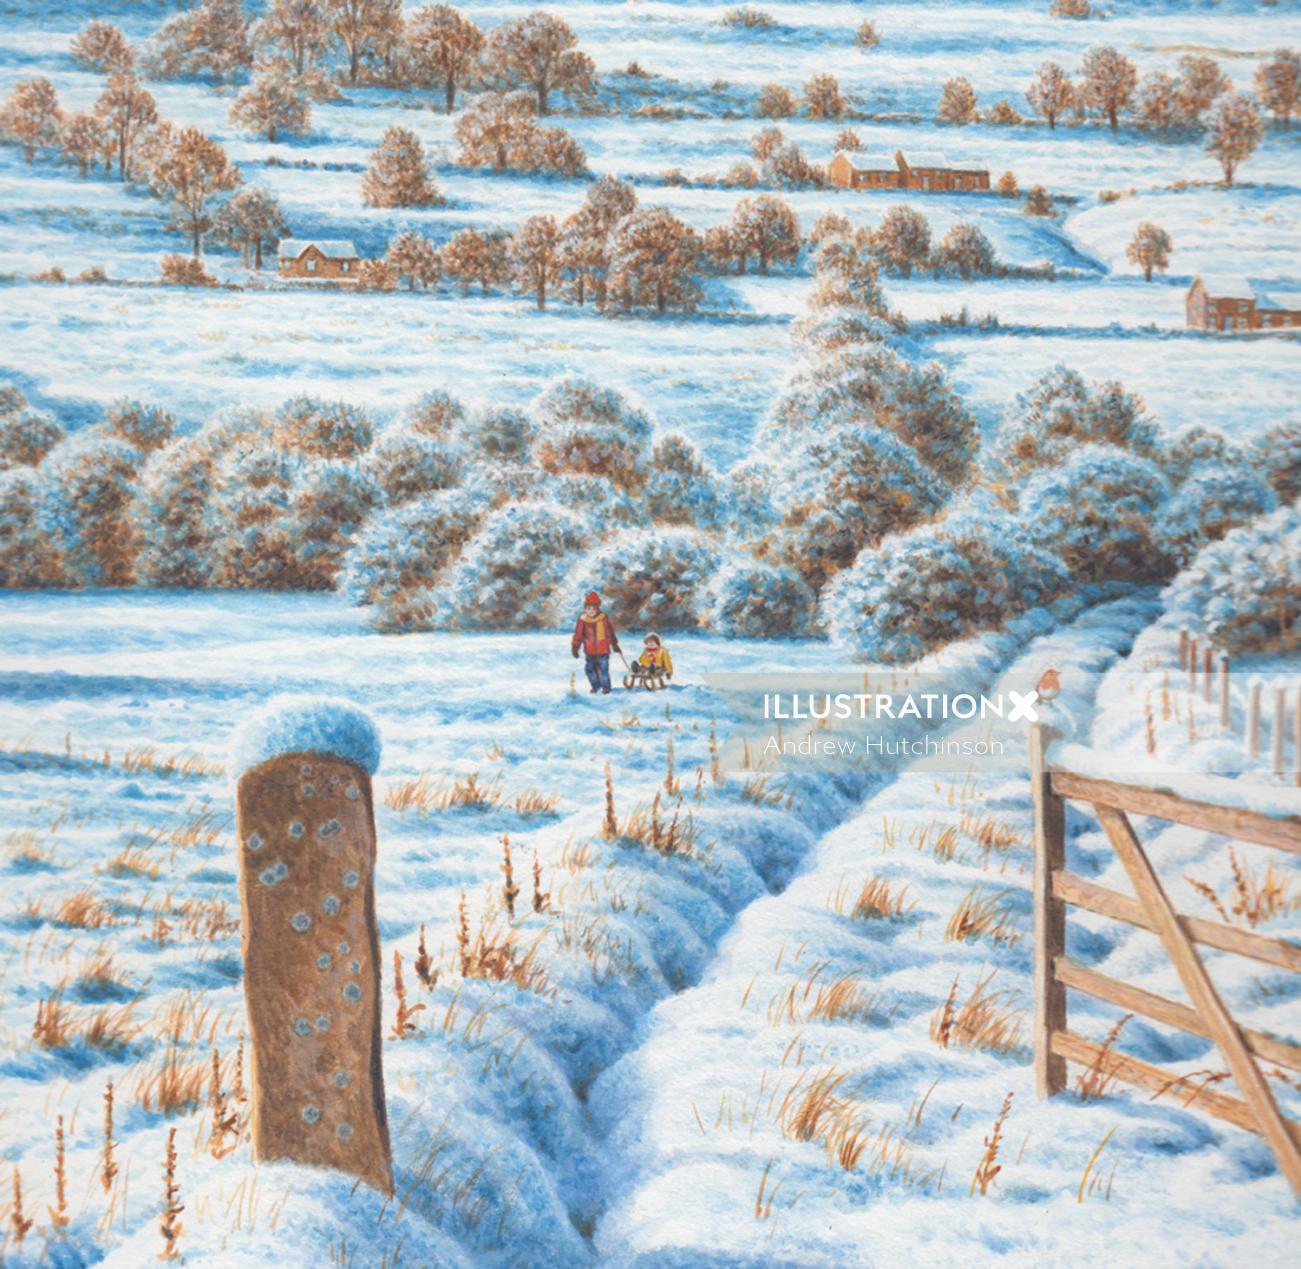 Snowfall on a Yorkshire tea farm illustration